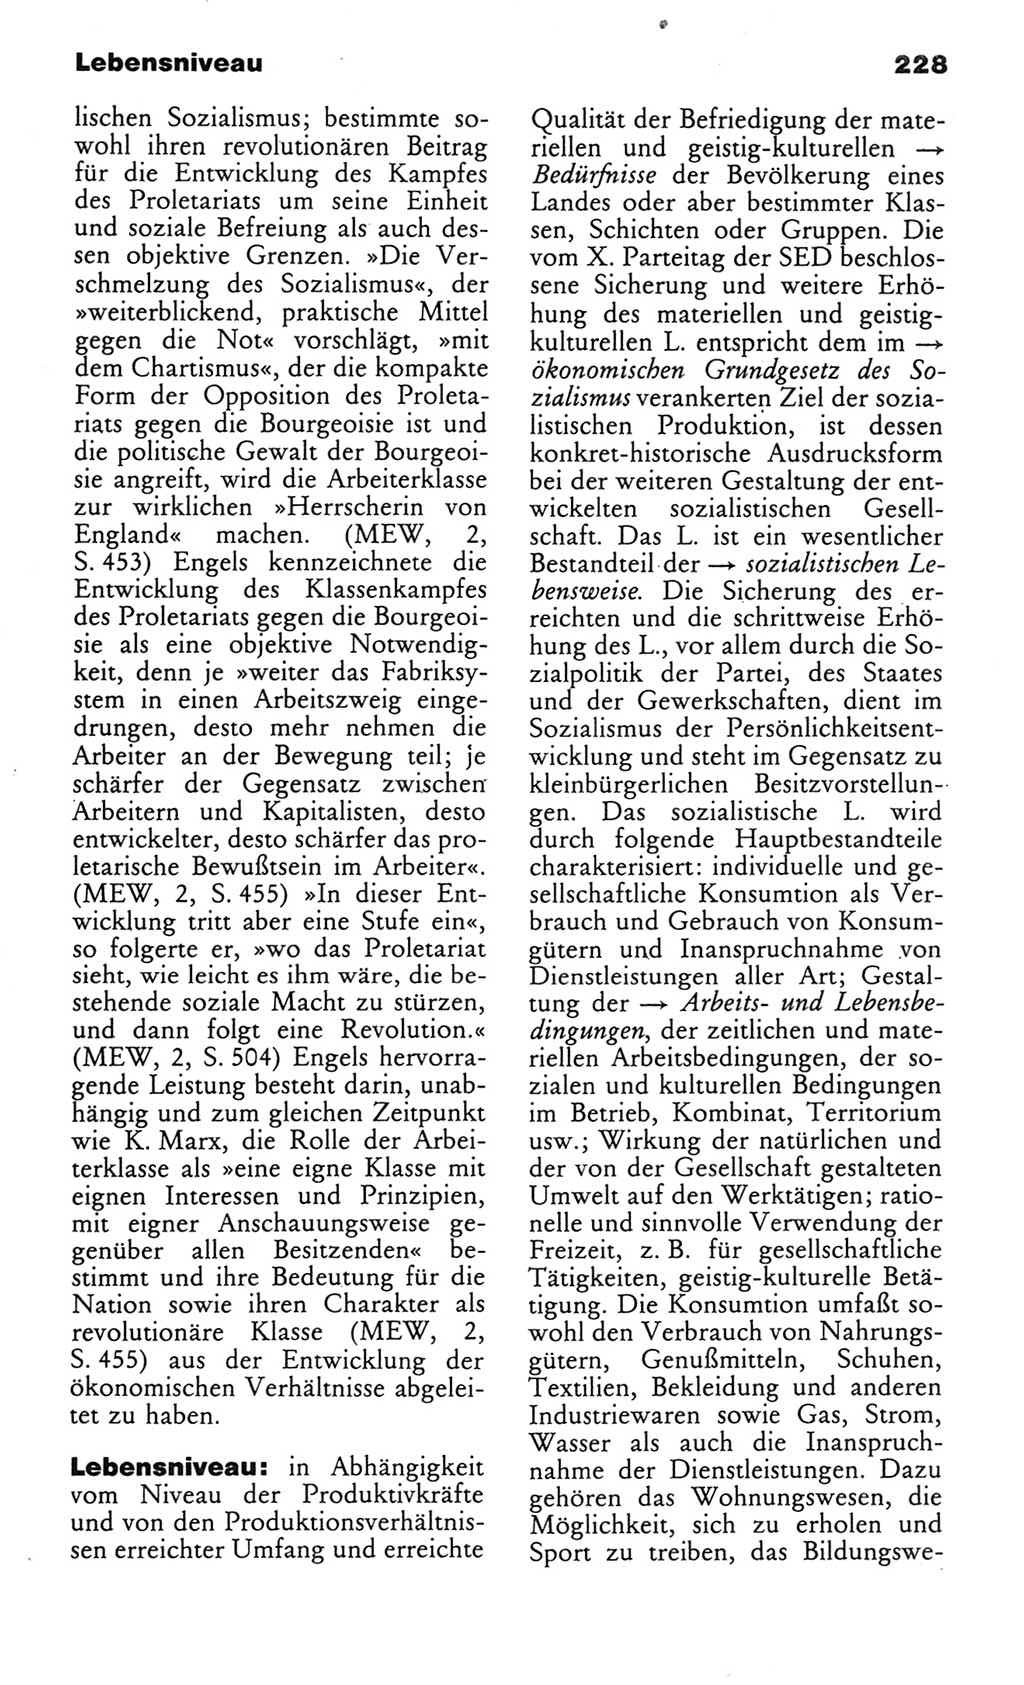 Wörterbuch des wissenschaftlichen Kommunismus [Deutsche Demokratische Republik (DDR)] 1982, Seite 228 (Wb. wiss. Komm. DDR 1982, S. 228)